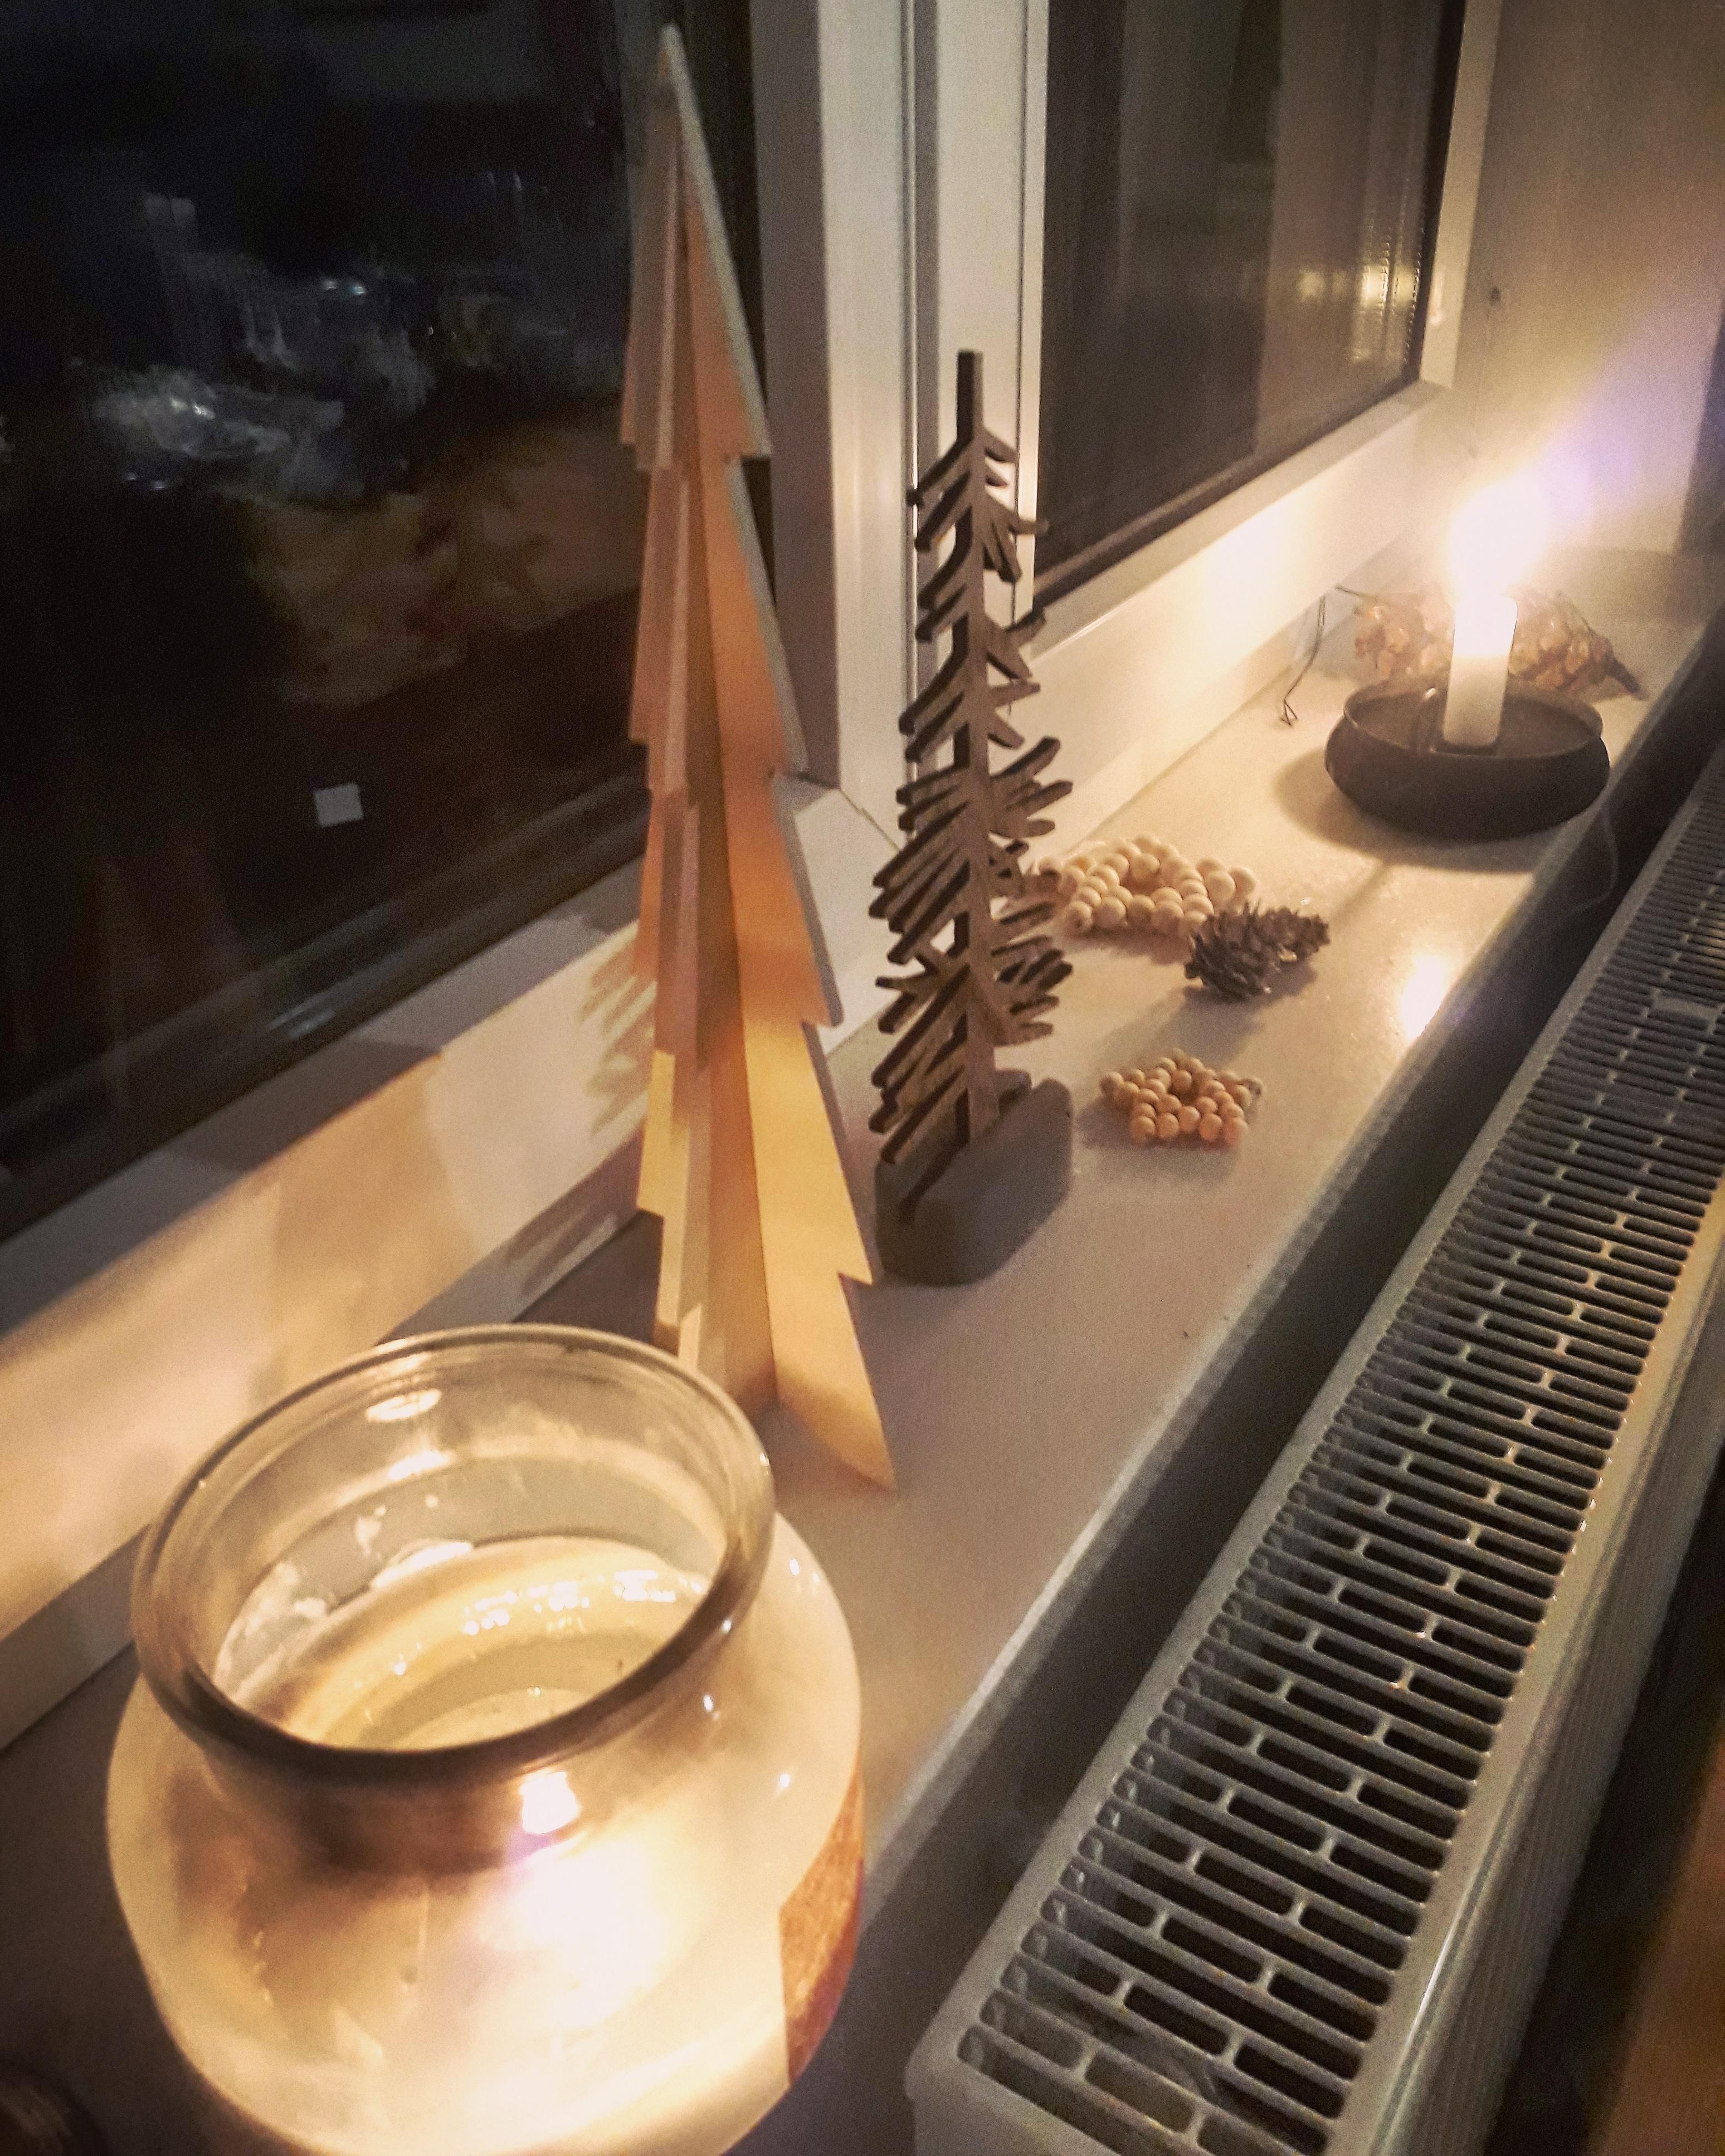 Wie sehr so ein bisschen Kerzenlicht alles erwärmt... #advent #sterne #Fenster #kerzen